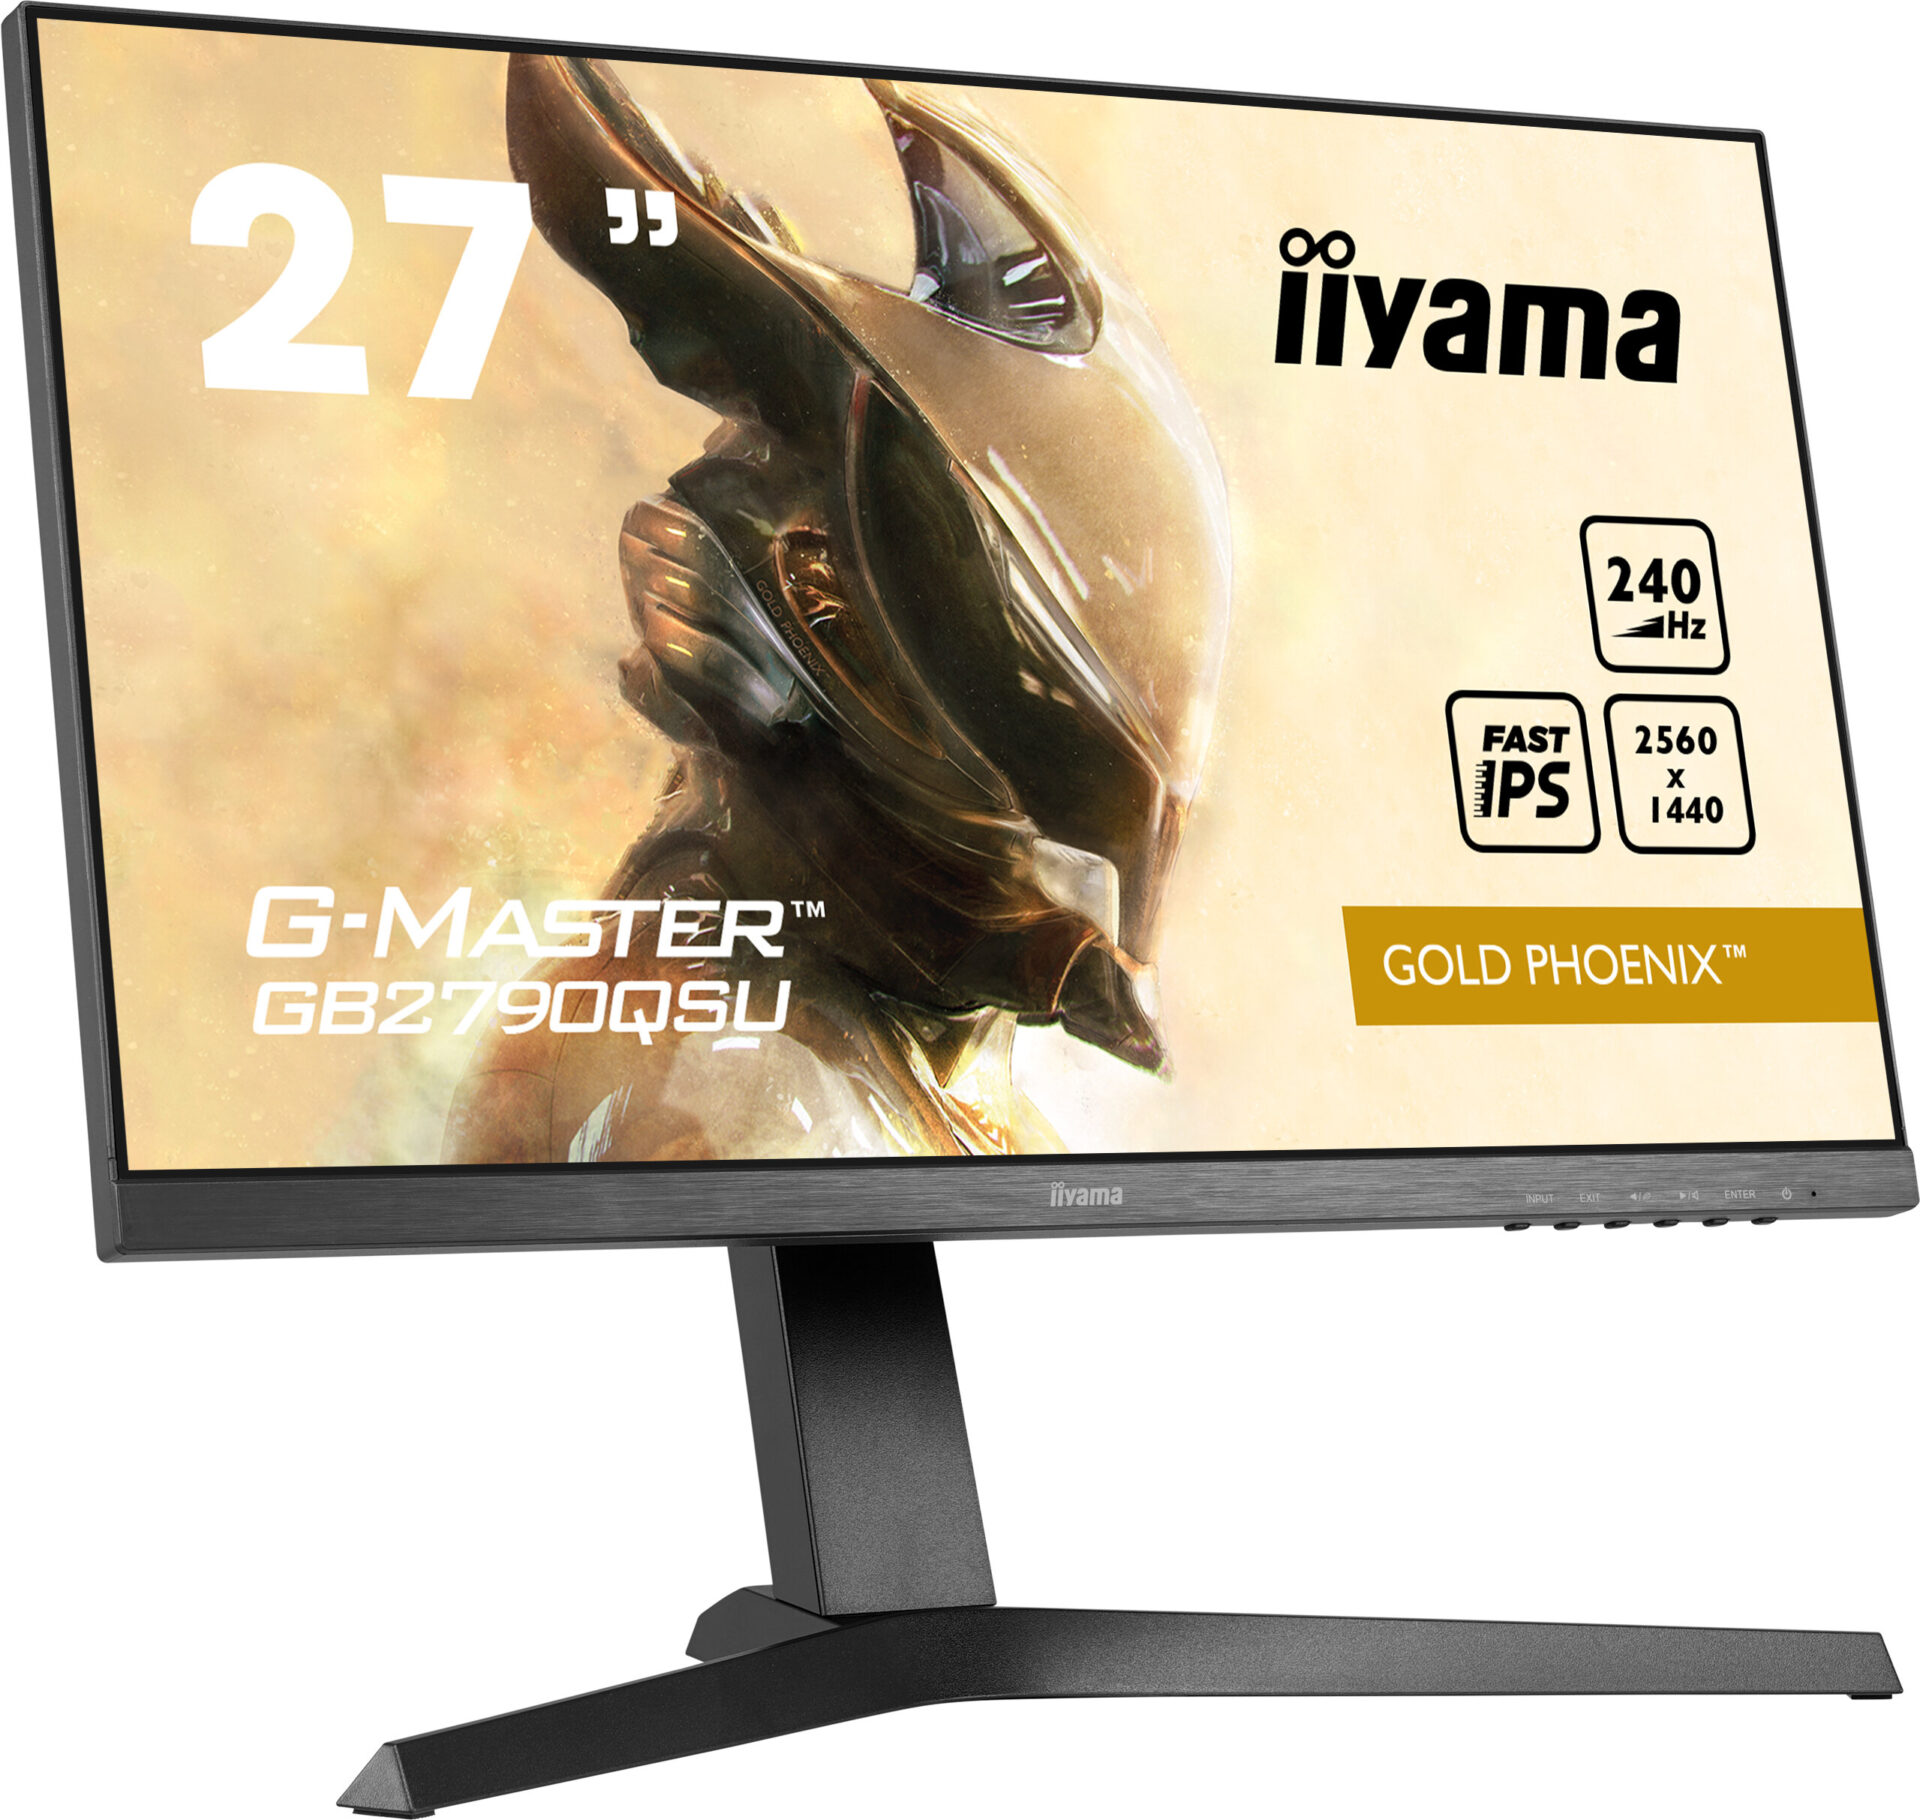 iiyama prezentuje G-Master GB2790QSU-B1 Gold Phoenix - idealne połączenie szybkości i wysokiej jakości obrazu 1